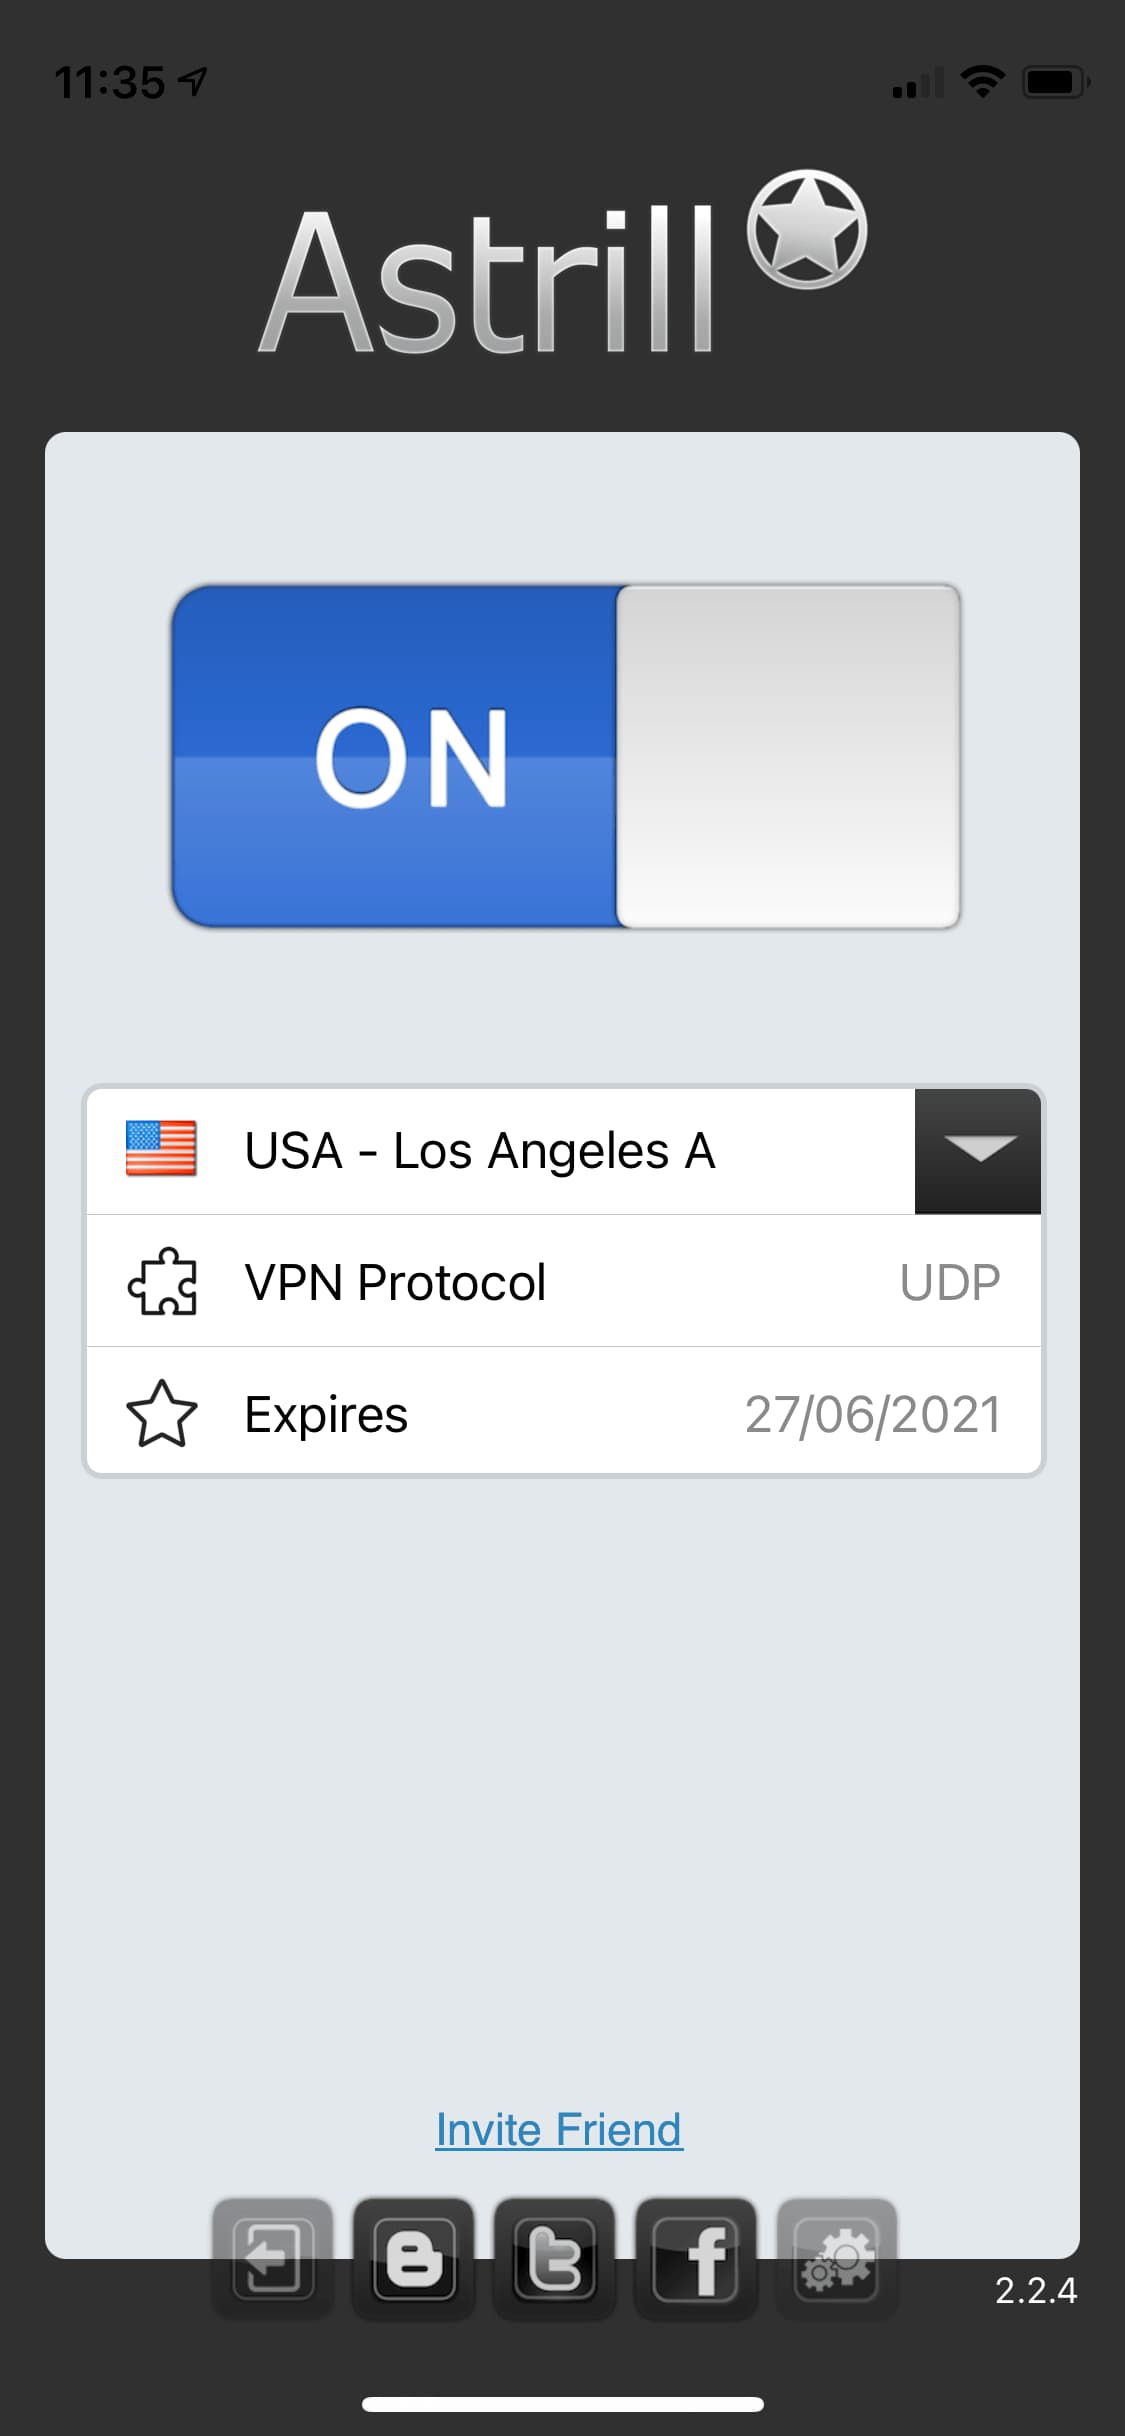 Captura de pantalla de la pantalla de inicio de la aplicación de Astrill para iOS